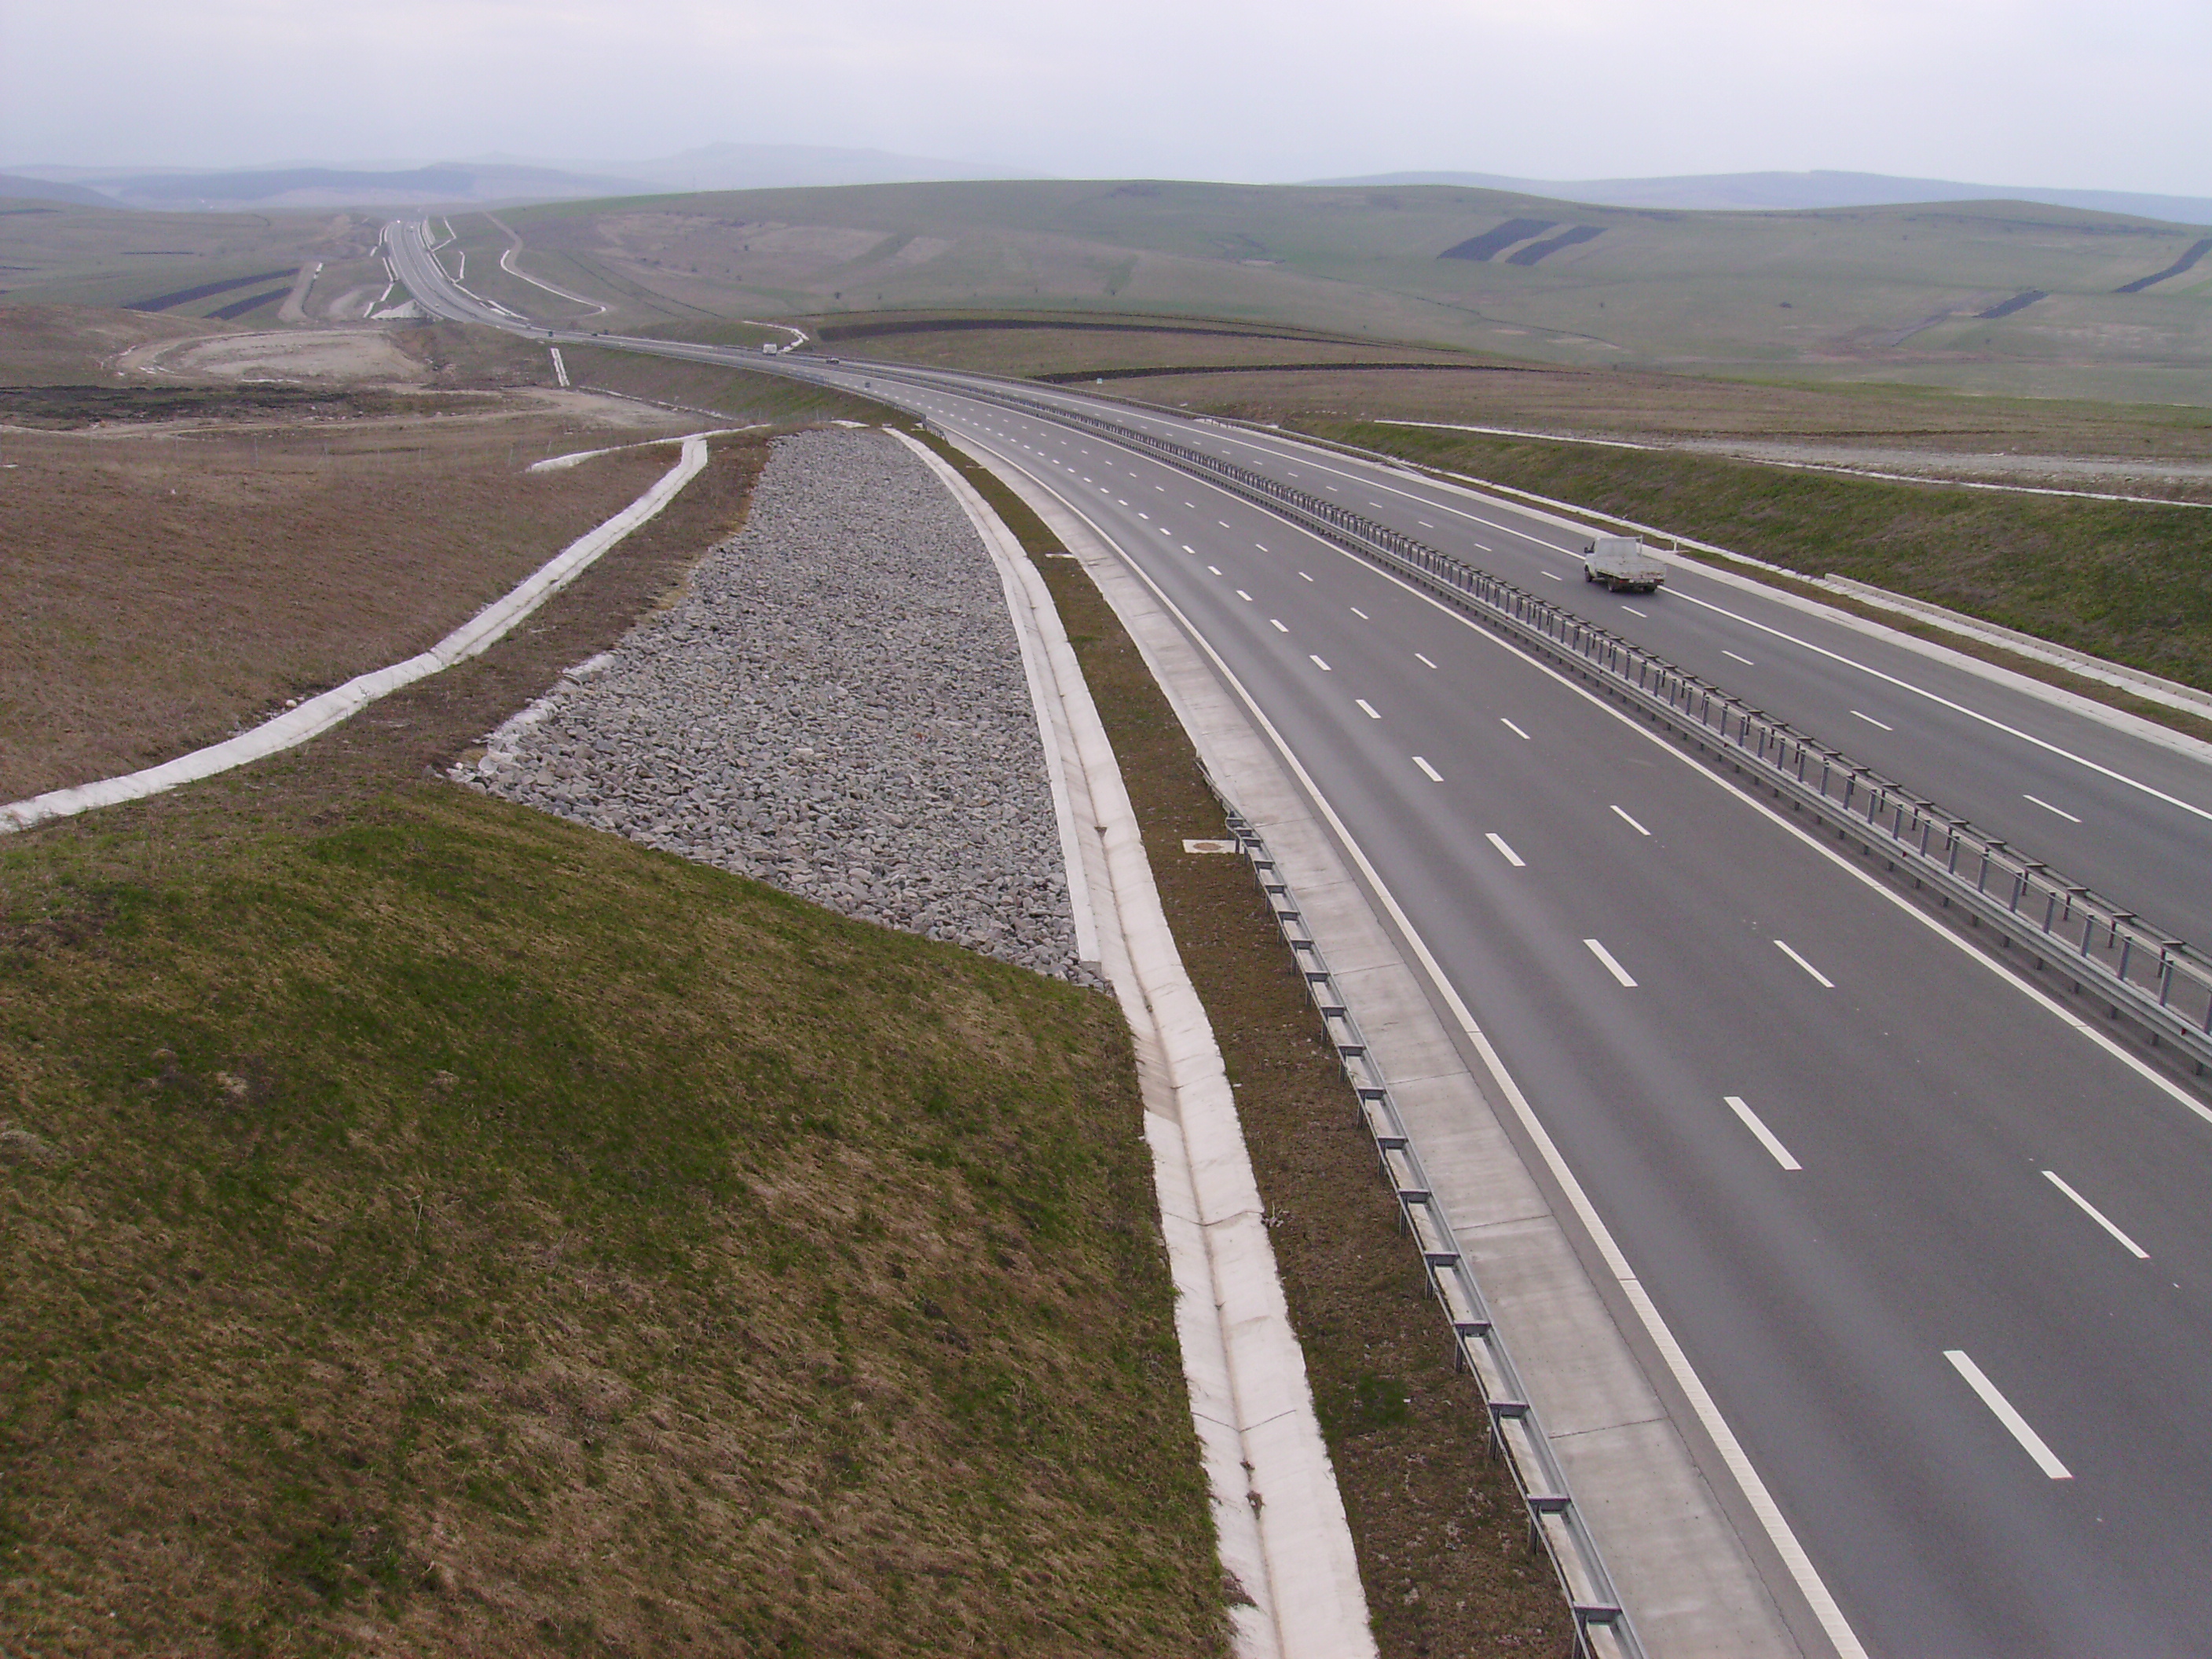 Megnyitották az A10-es autópálya Nagyenyed és Gyulafehérvár közötti szakaszát